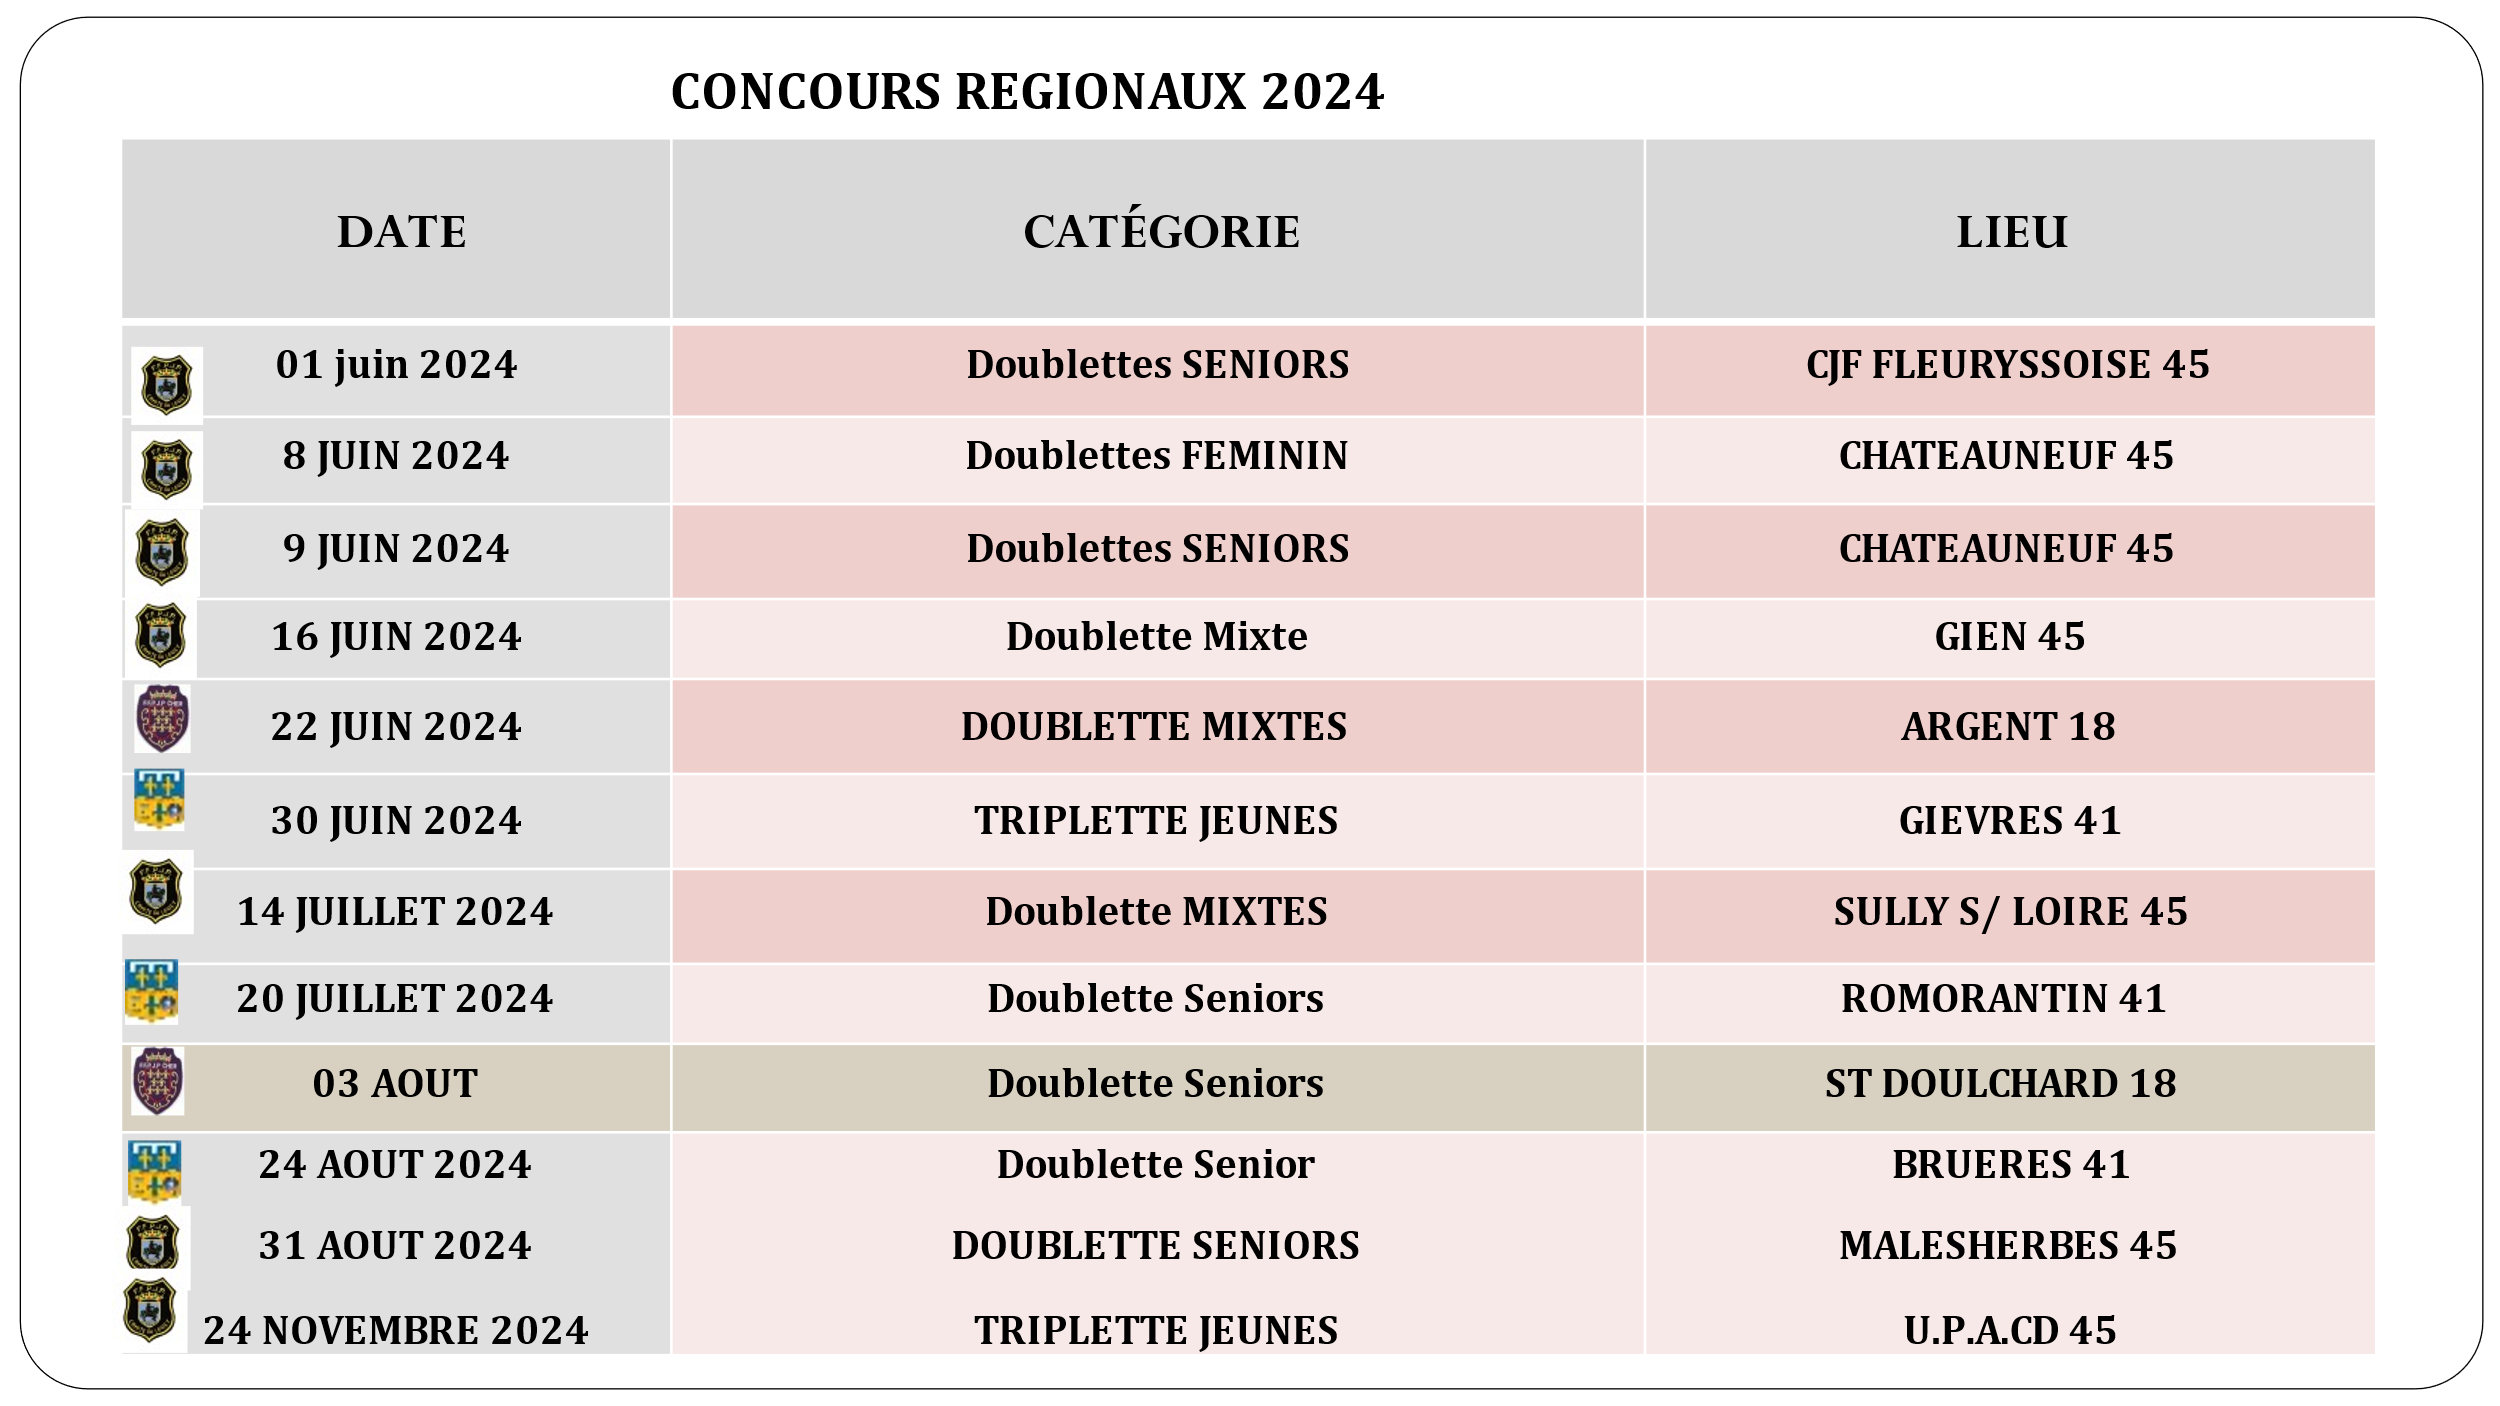 Région Centre Val de Loire - Concours Régionaux 2024